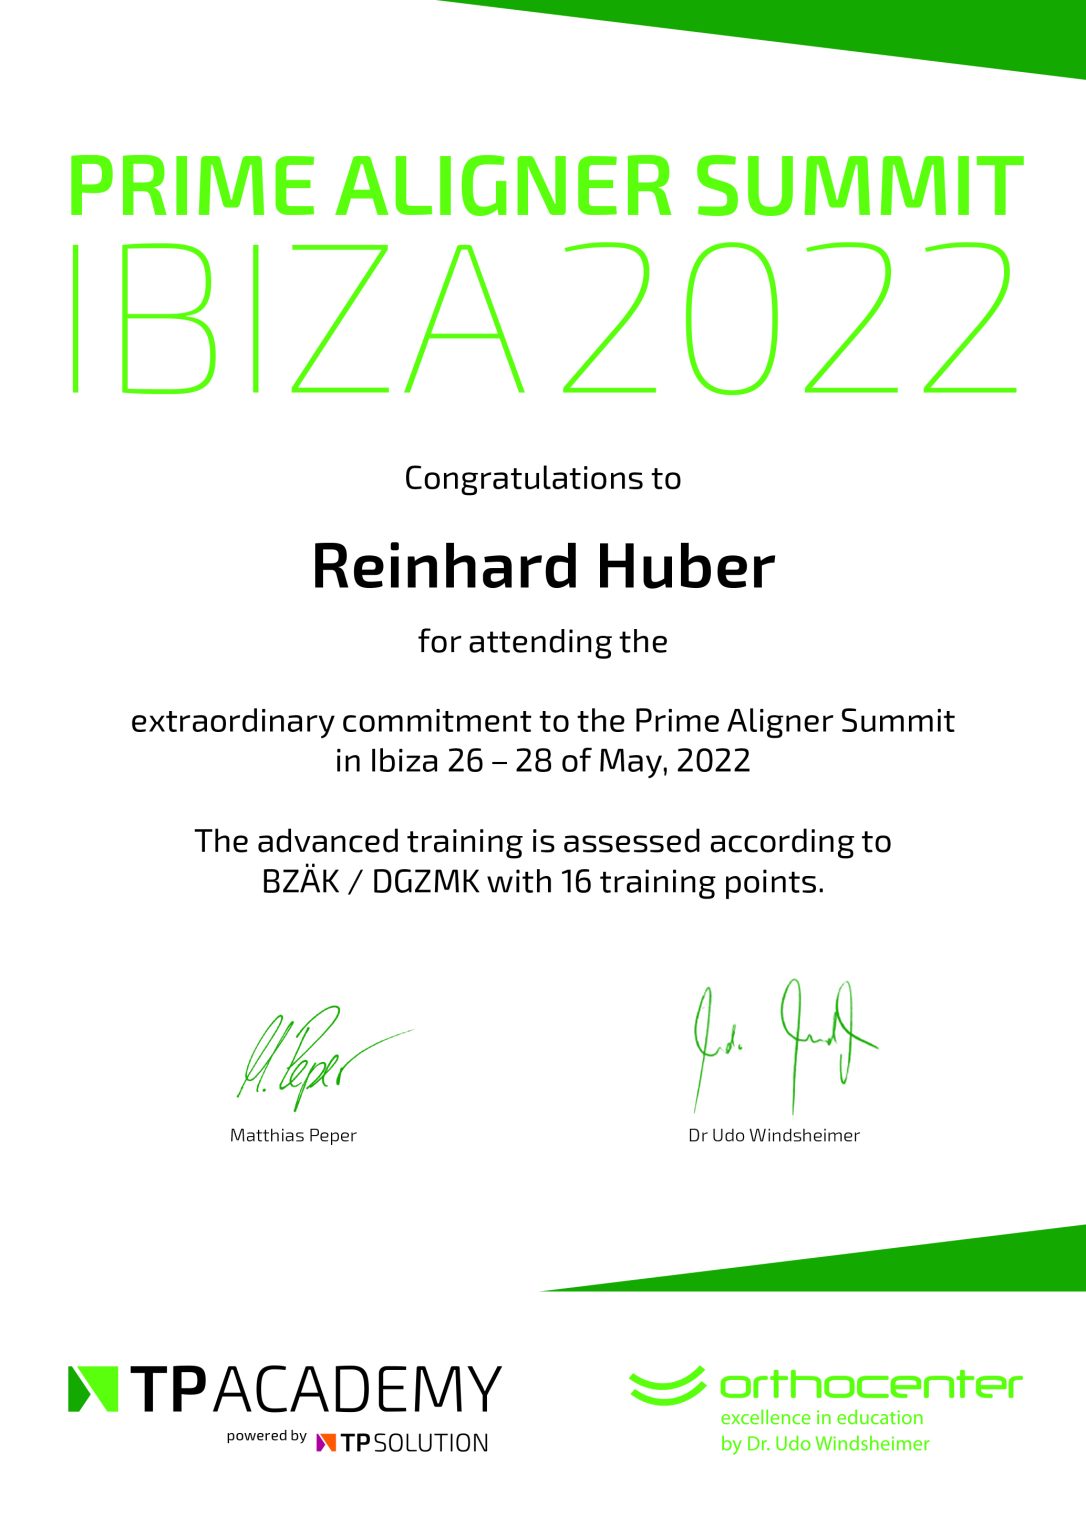 Prime Aligner Summit - Ibiza 2022